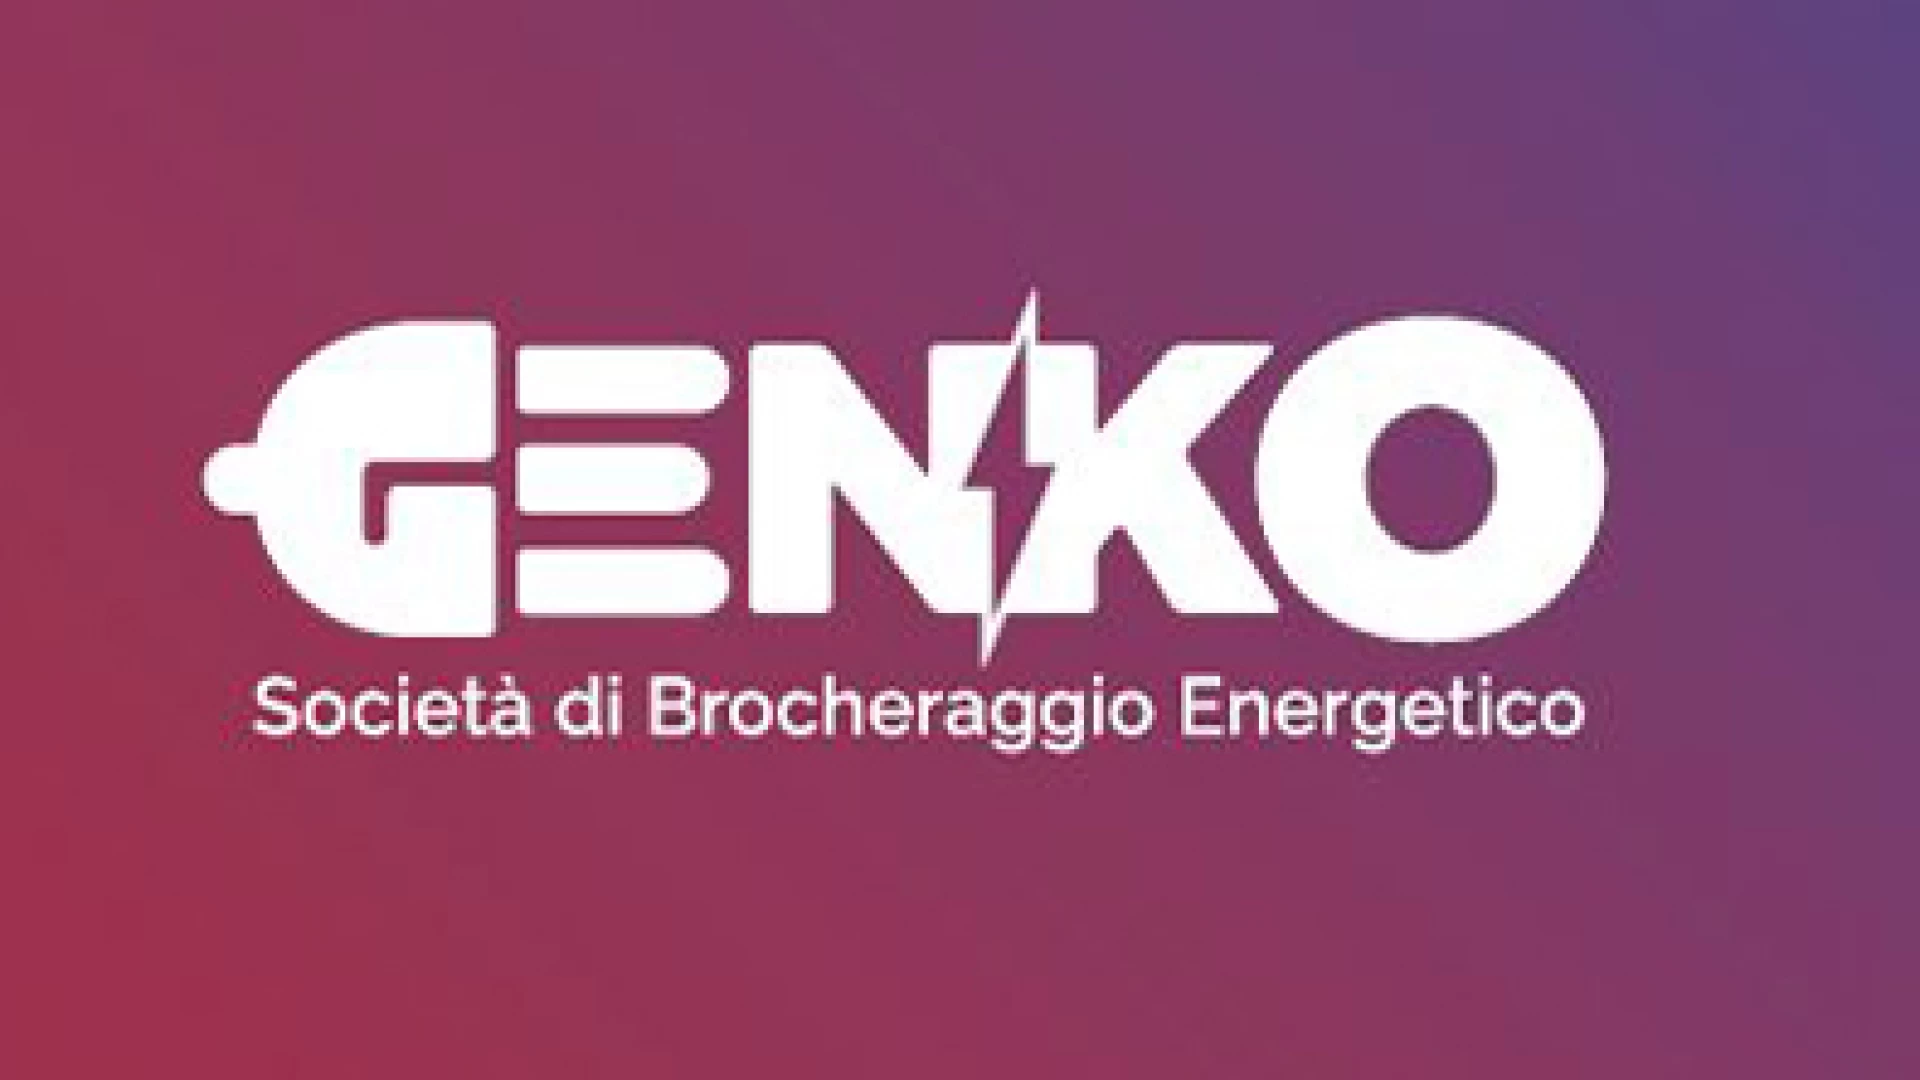 Genko Srl, l’innovazione nell’offerta dei servizi energetici.